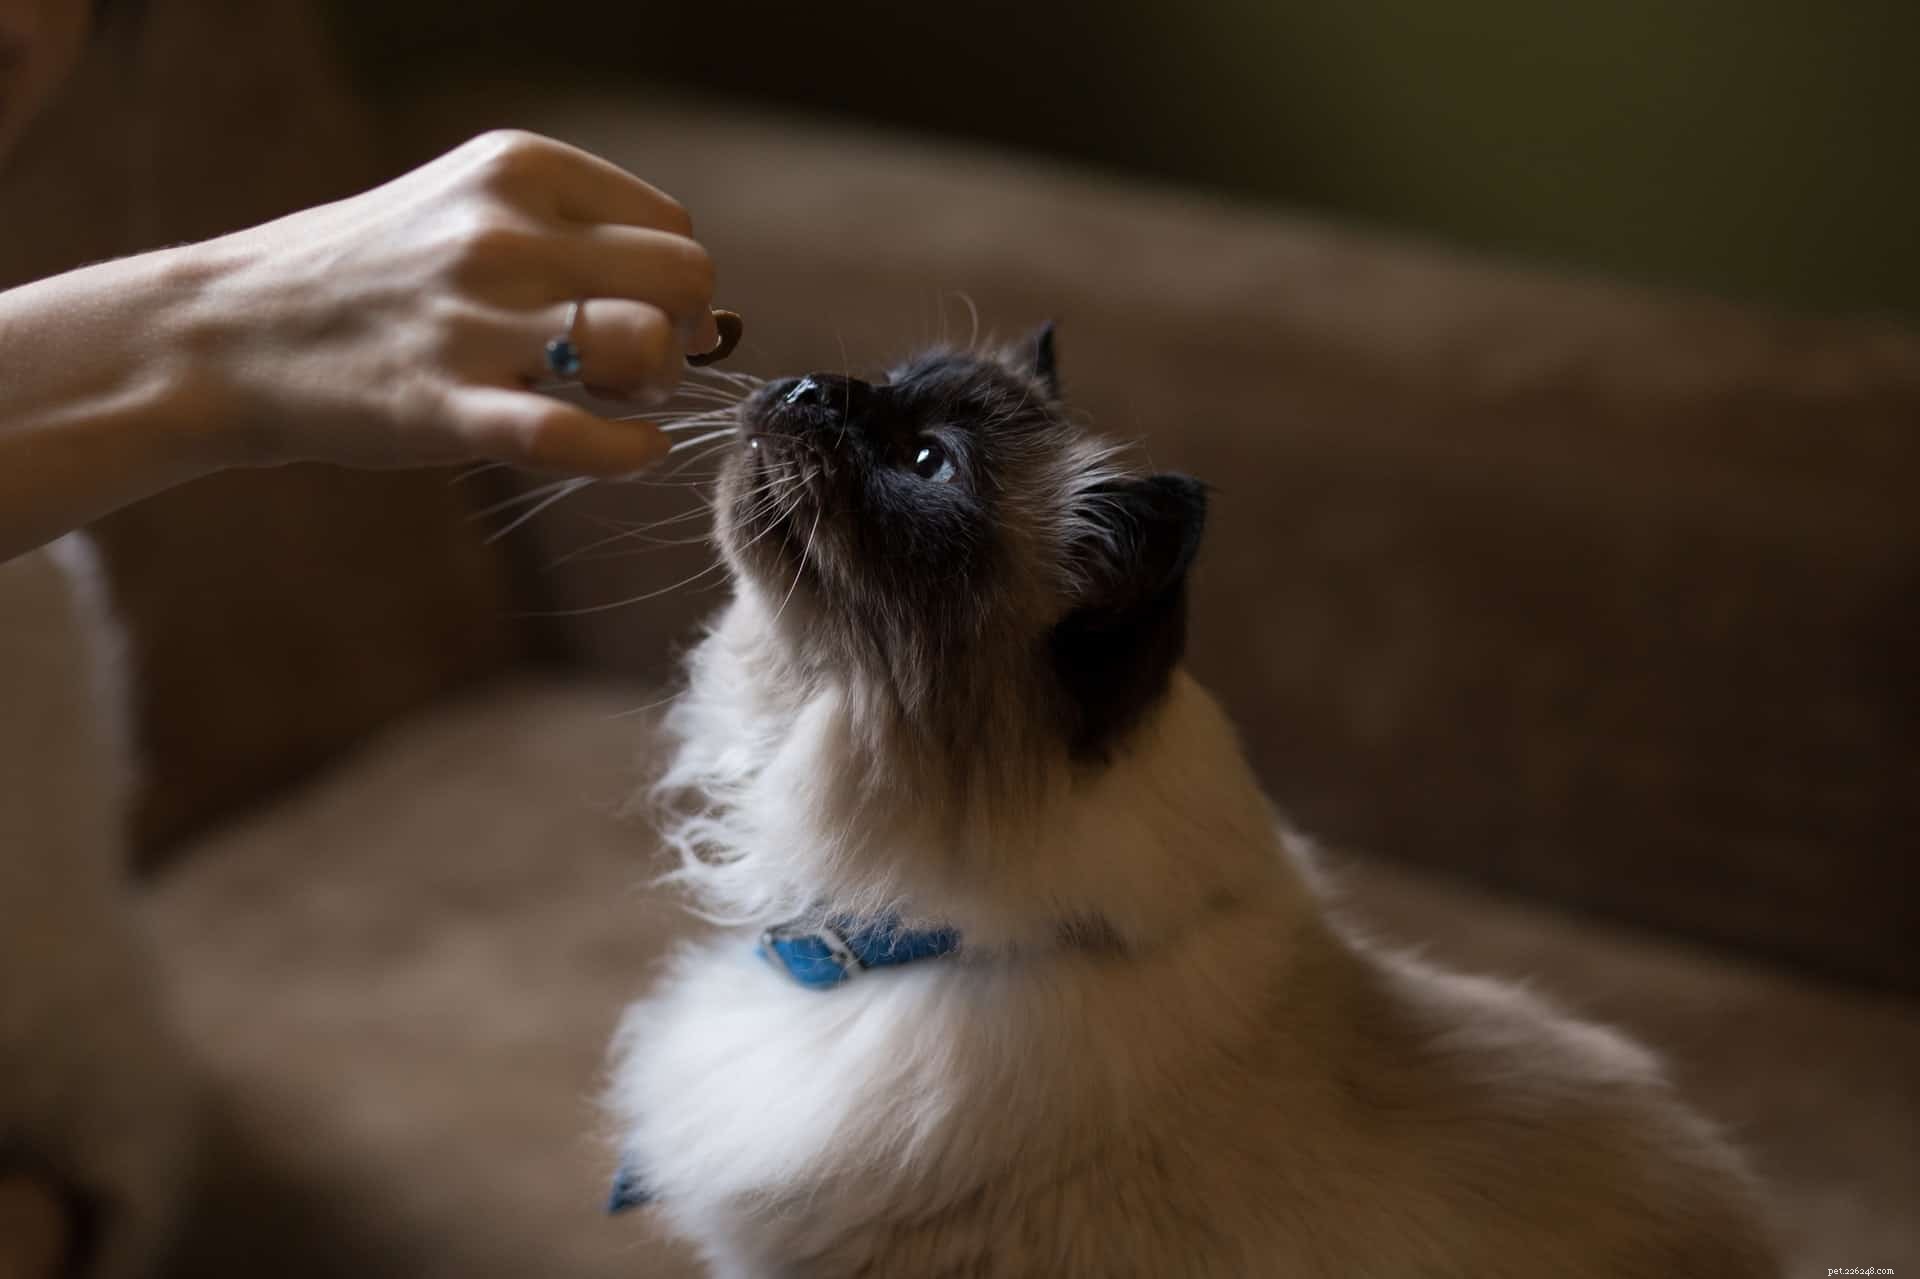 Deskundige tips voor het knippen van de nagels van uw kat